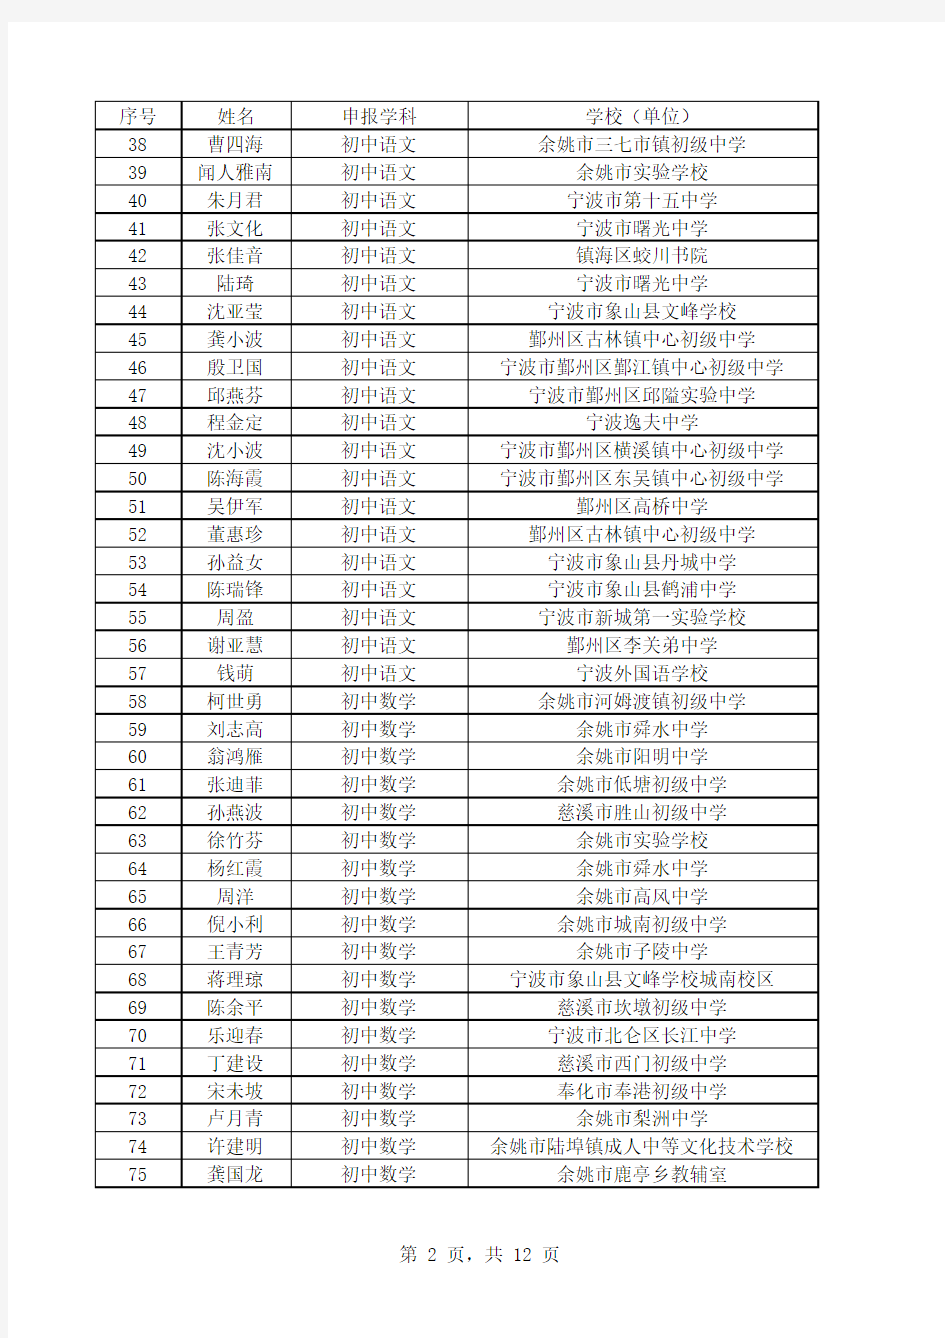 宁波市2013年中学高级教师通过人员名单